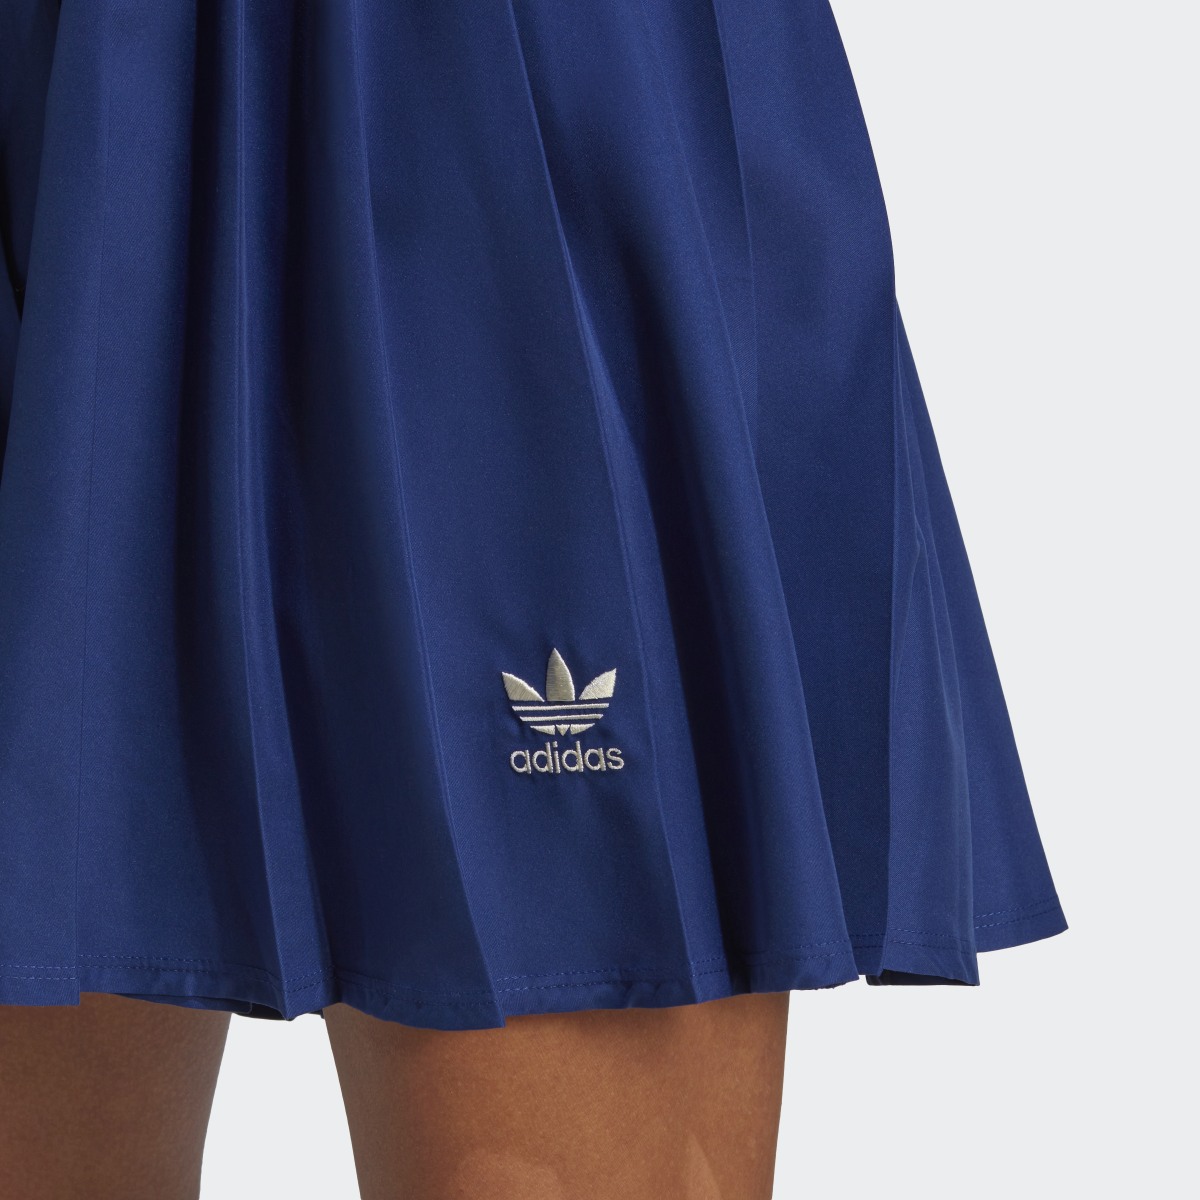 Adidas Pleated Skirt. 6